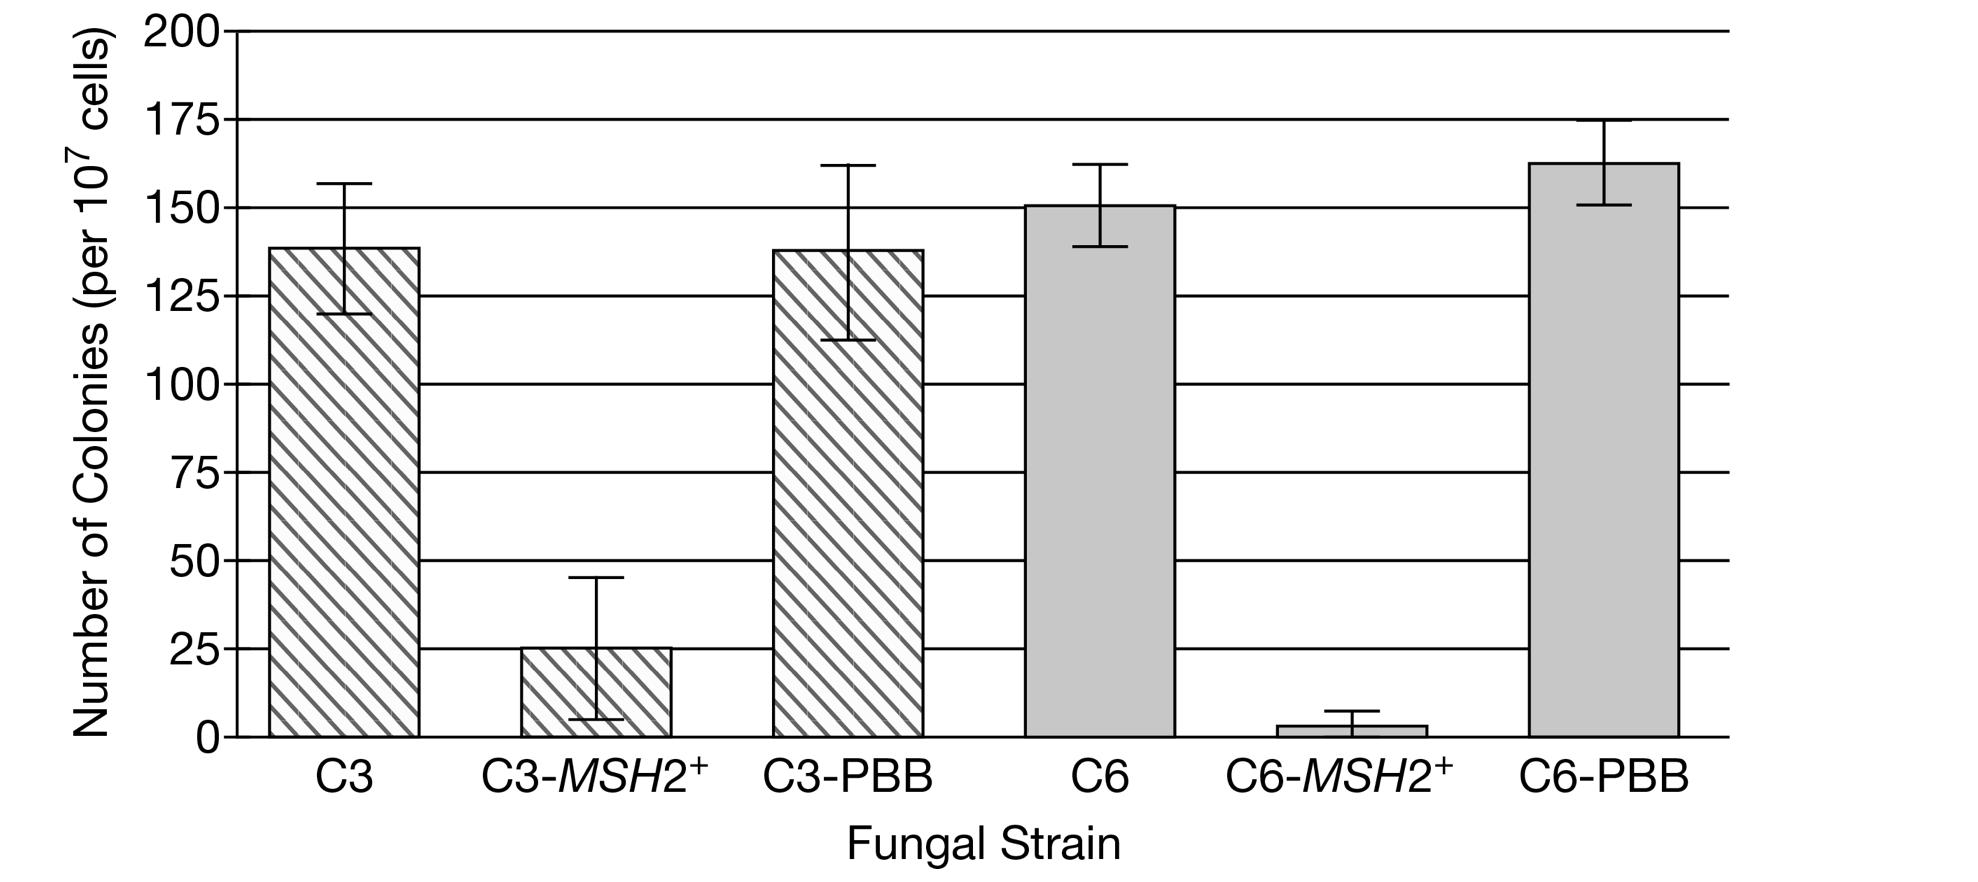 Number of Colonies (per 107 cells) C3 C6-MSH2+ C6-PBB C3-MSH2+ C3-PBB C6 Fungal Strain